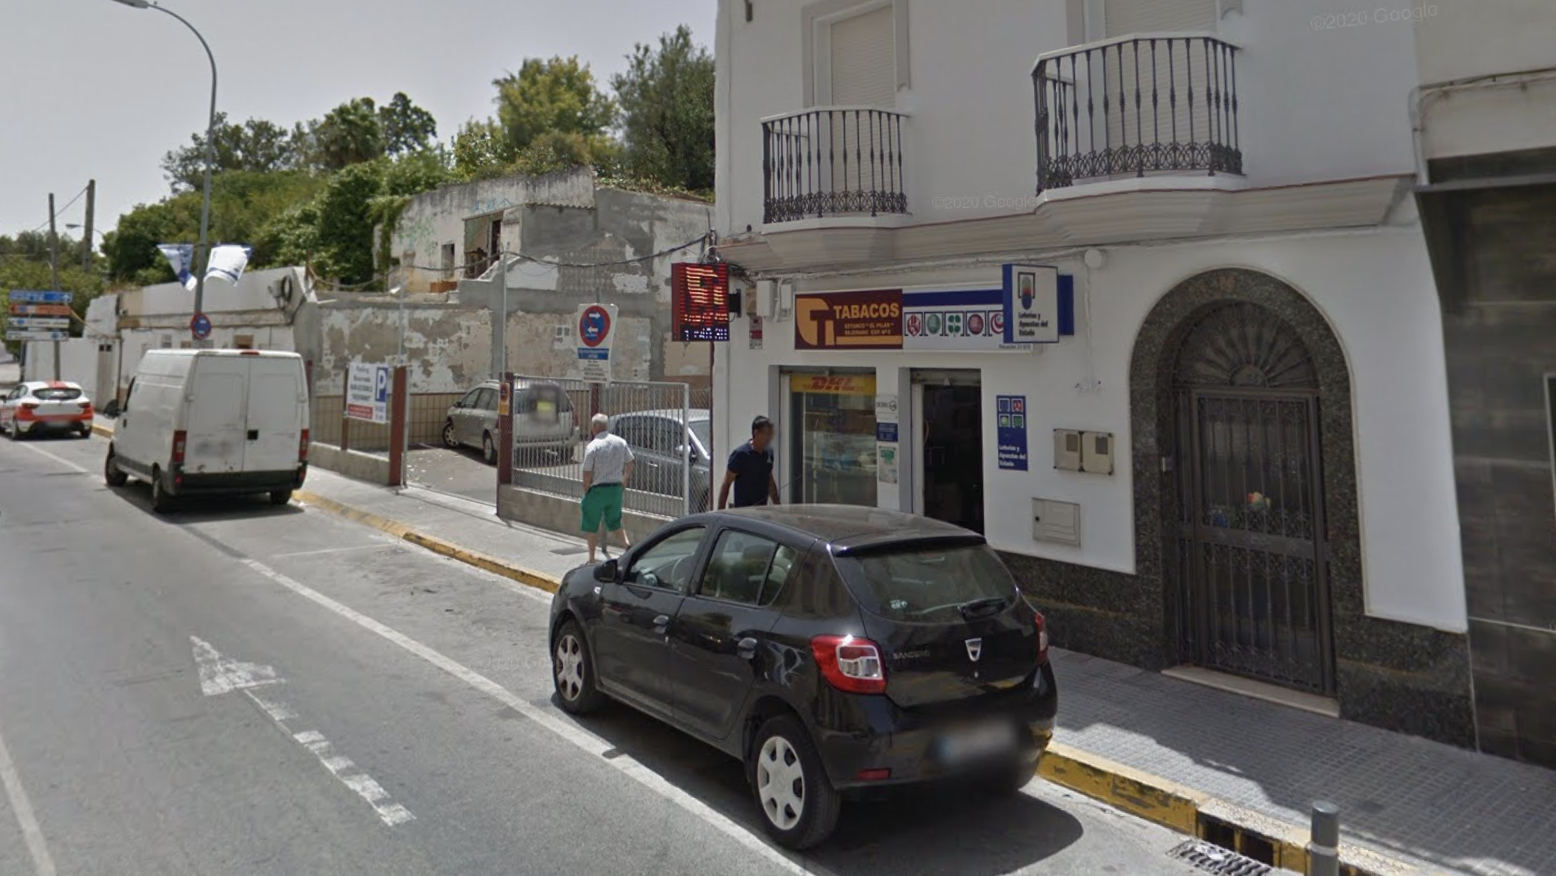 Administración de Loterías de la Cuesta del Matadero, en Chiclana, en una imagen de Google Maps.